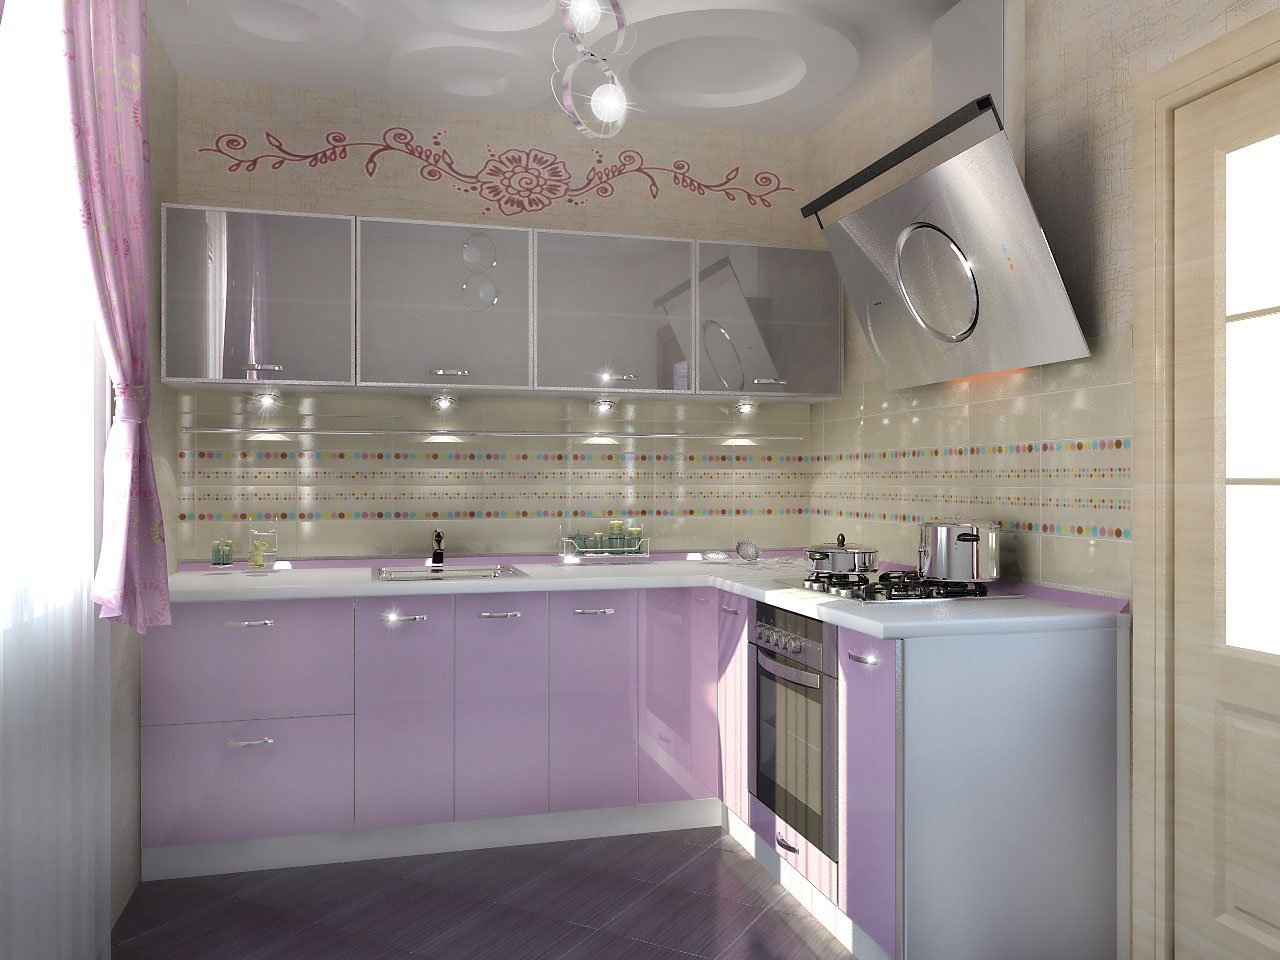 Кухня Серо Фиолетовая Фото